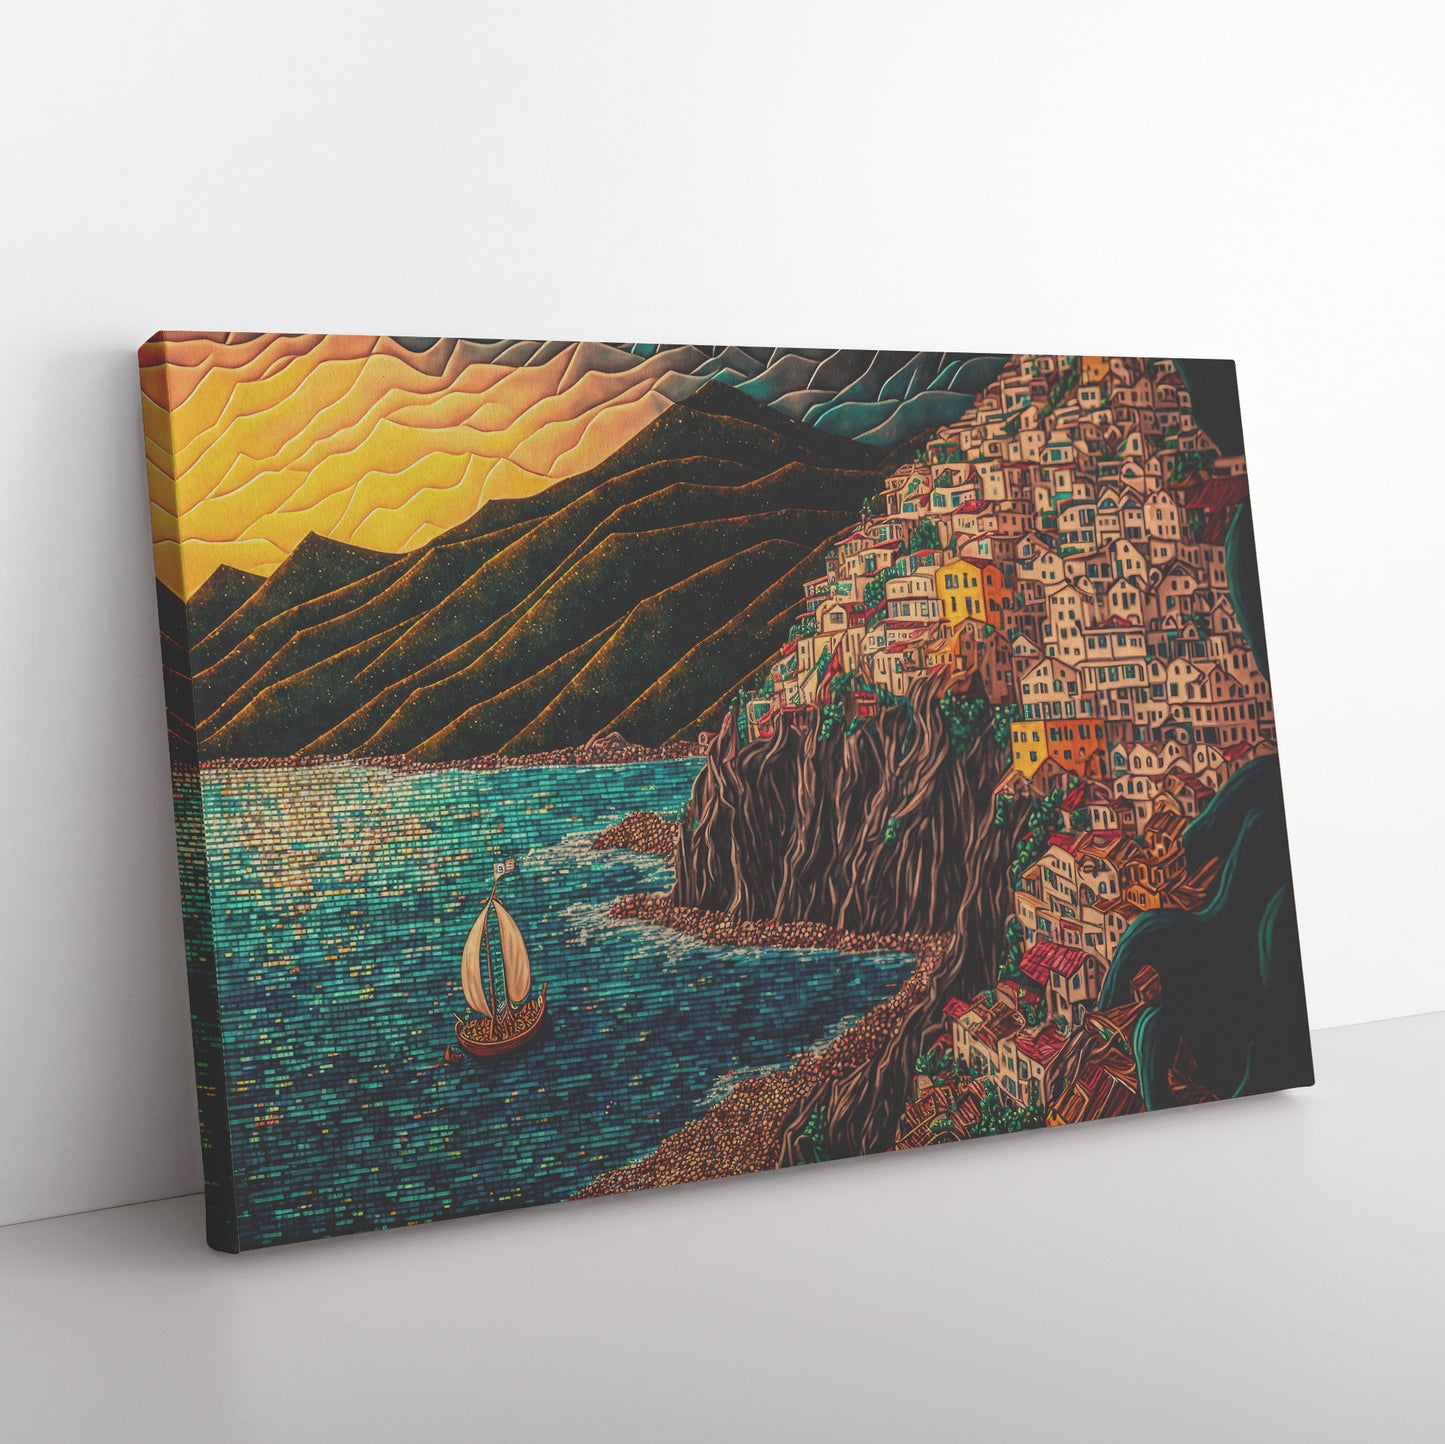 Cinque Terre Landscape Print, Riomaggiore Landscape Painting, Midjourney AI Art